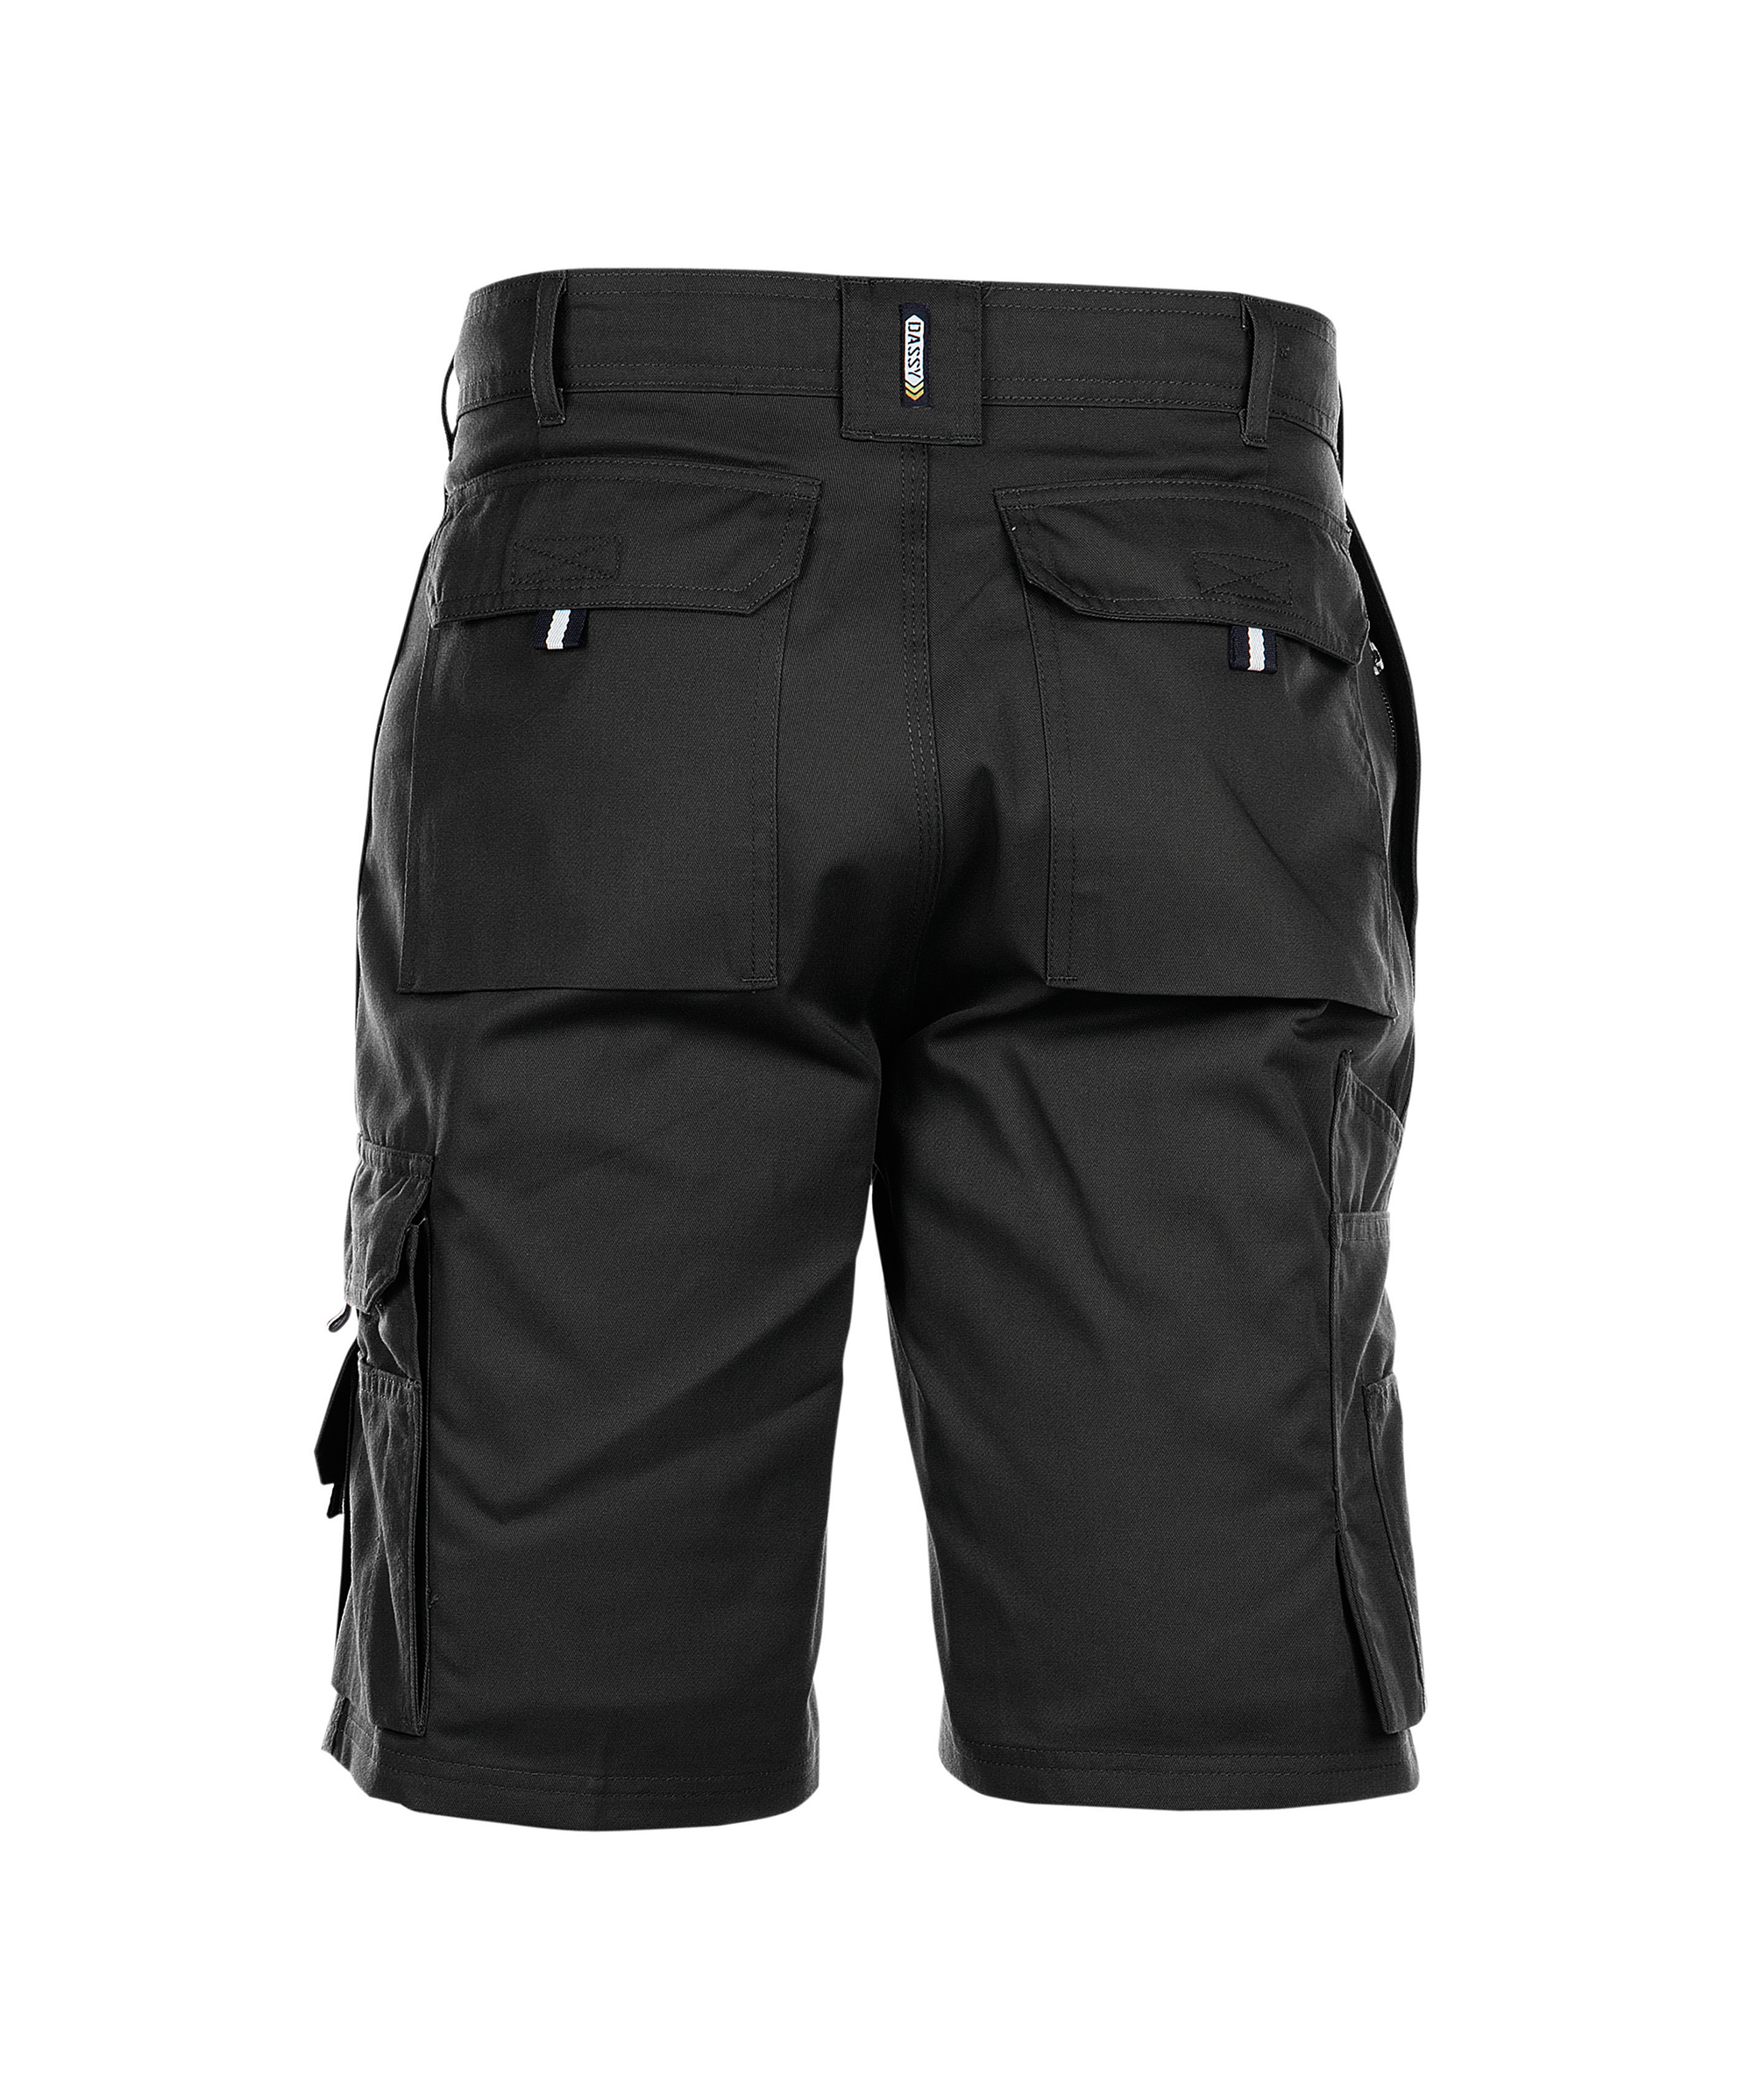 BARI_Work-shorts_black_BACK.jpg